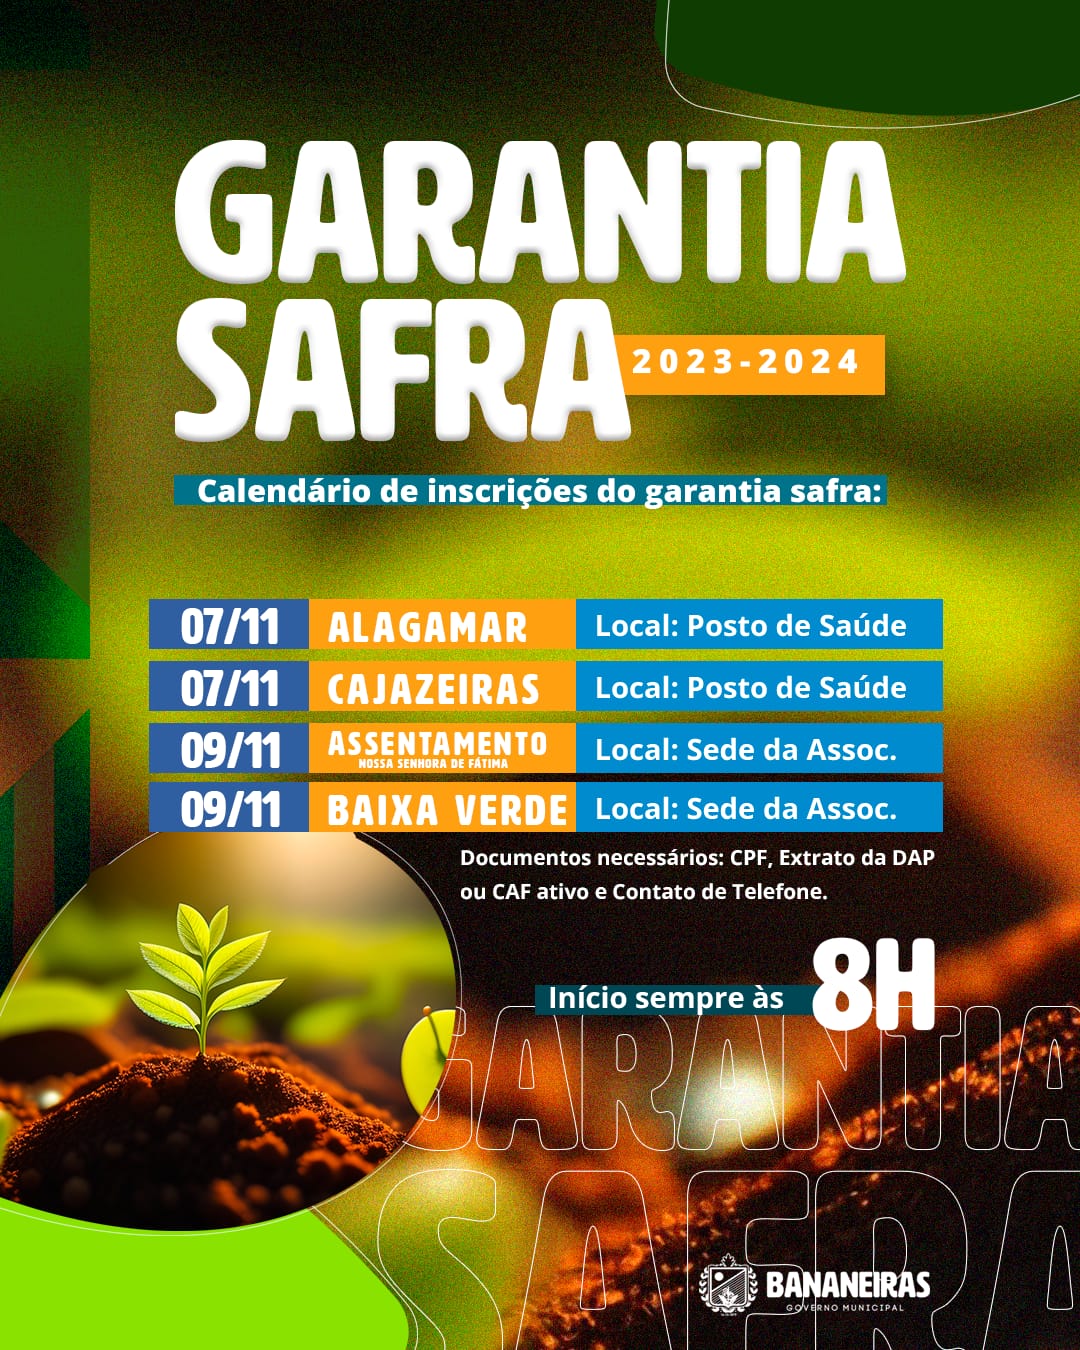 Prefeitura de Bananeiras inicia inscrições para o Garantia Safra 2023/2024